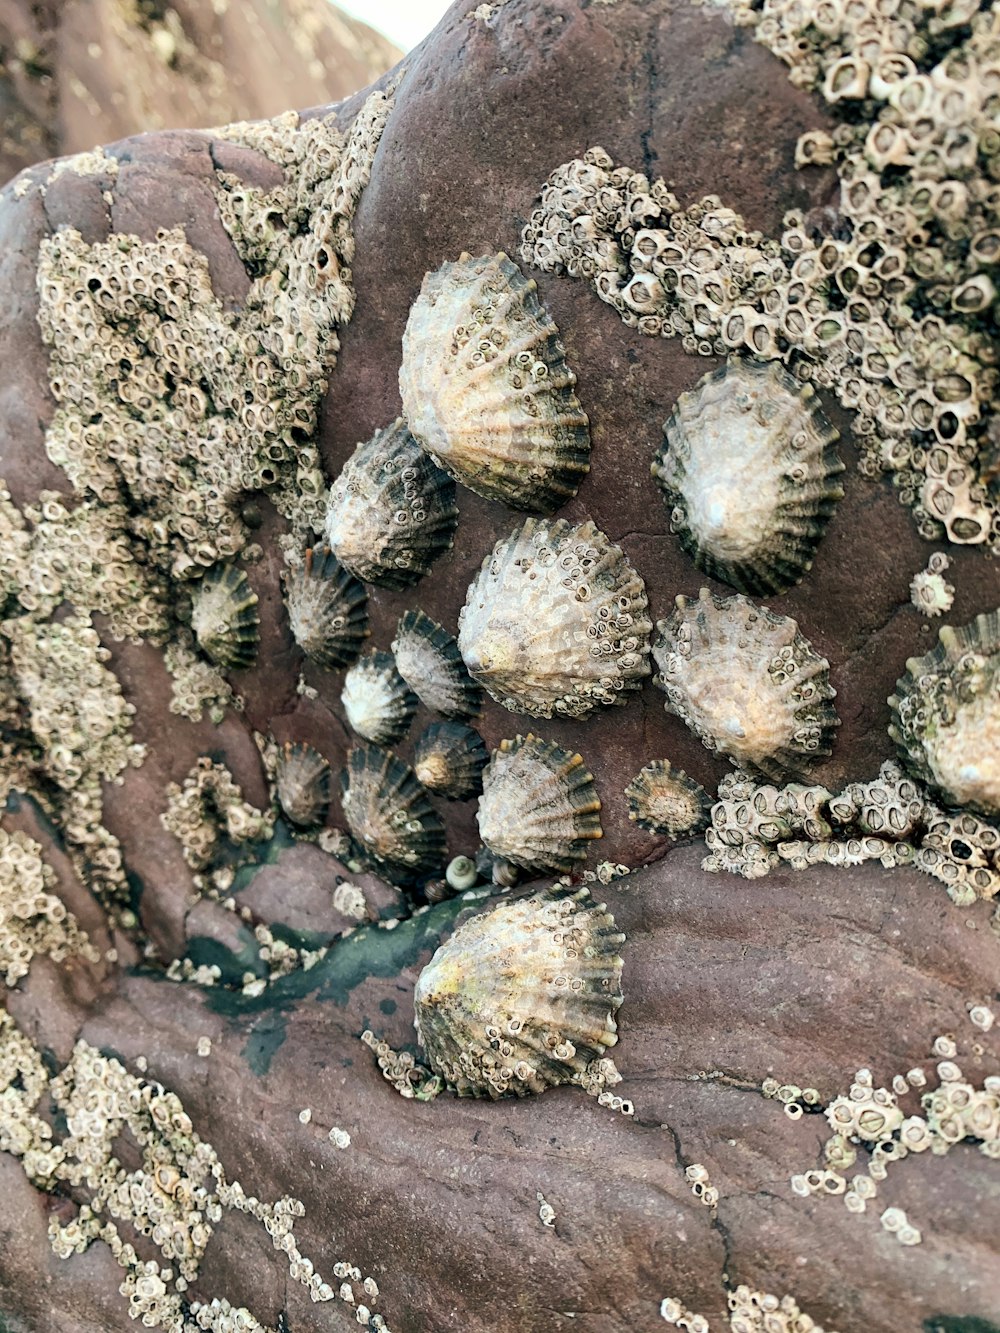 brown and gray sea shells